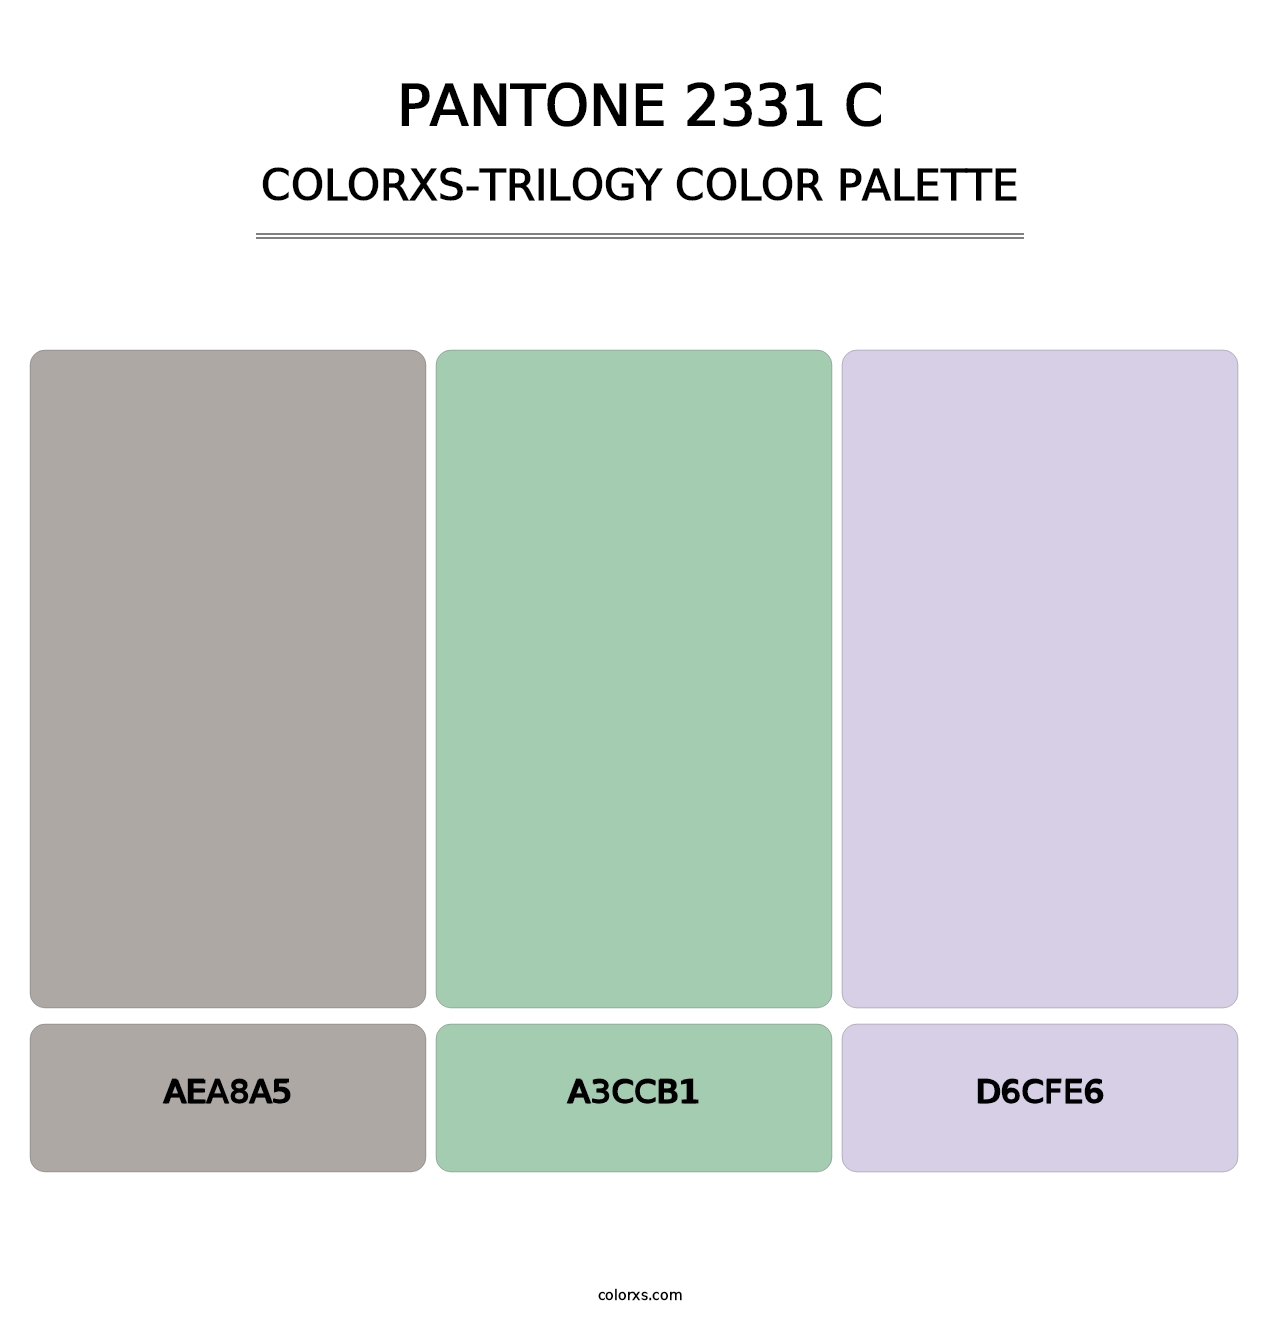 PANTONE 2331 C - Colorxs Trilogy Palette